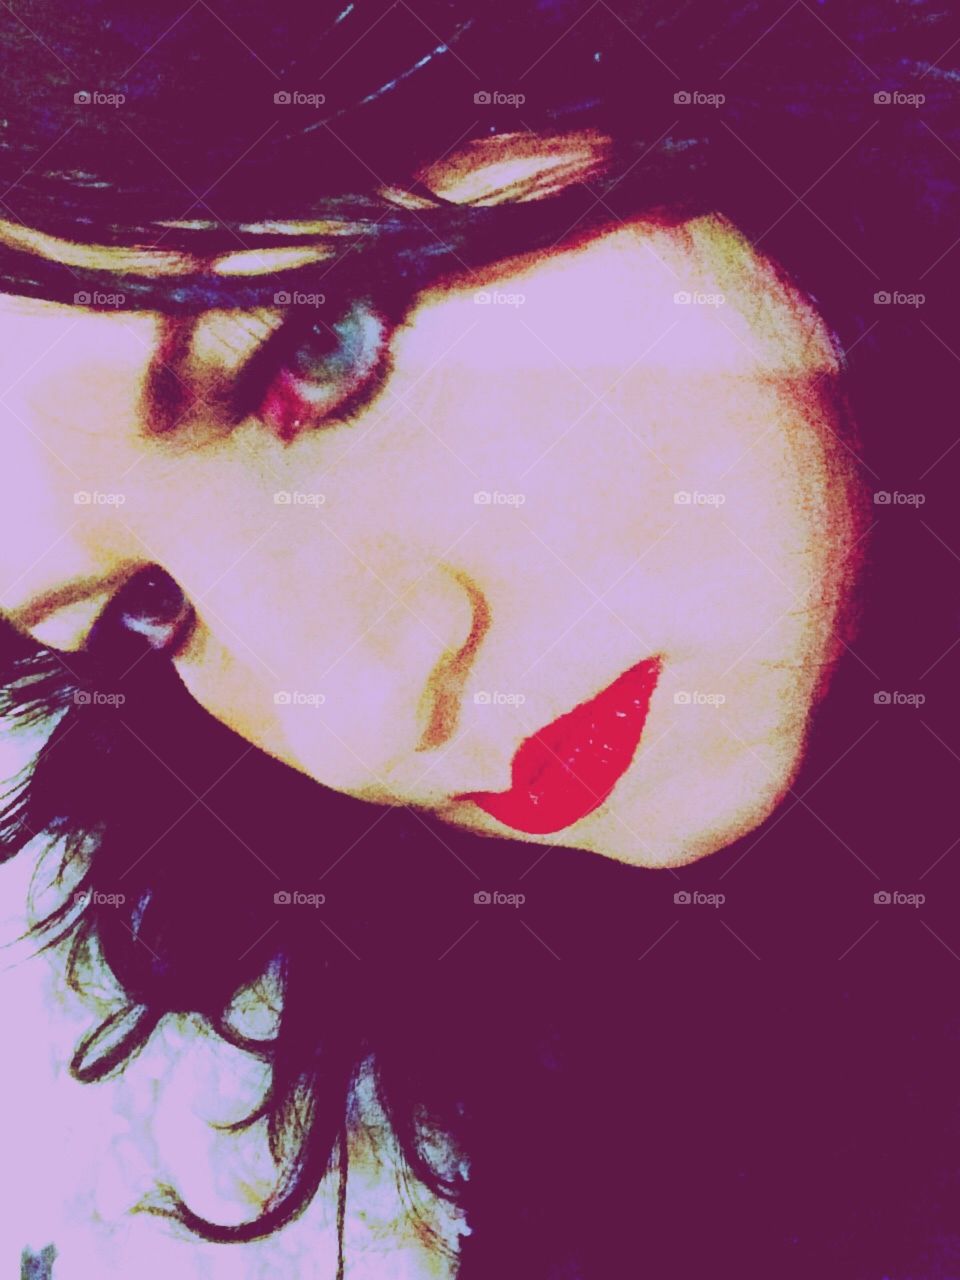 Black hair girl red lips